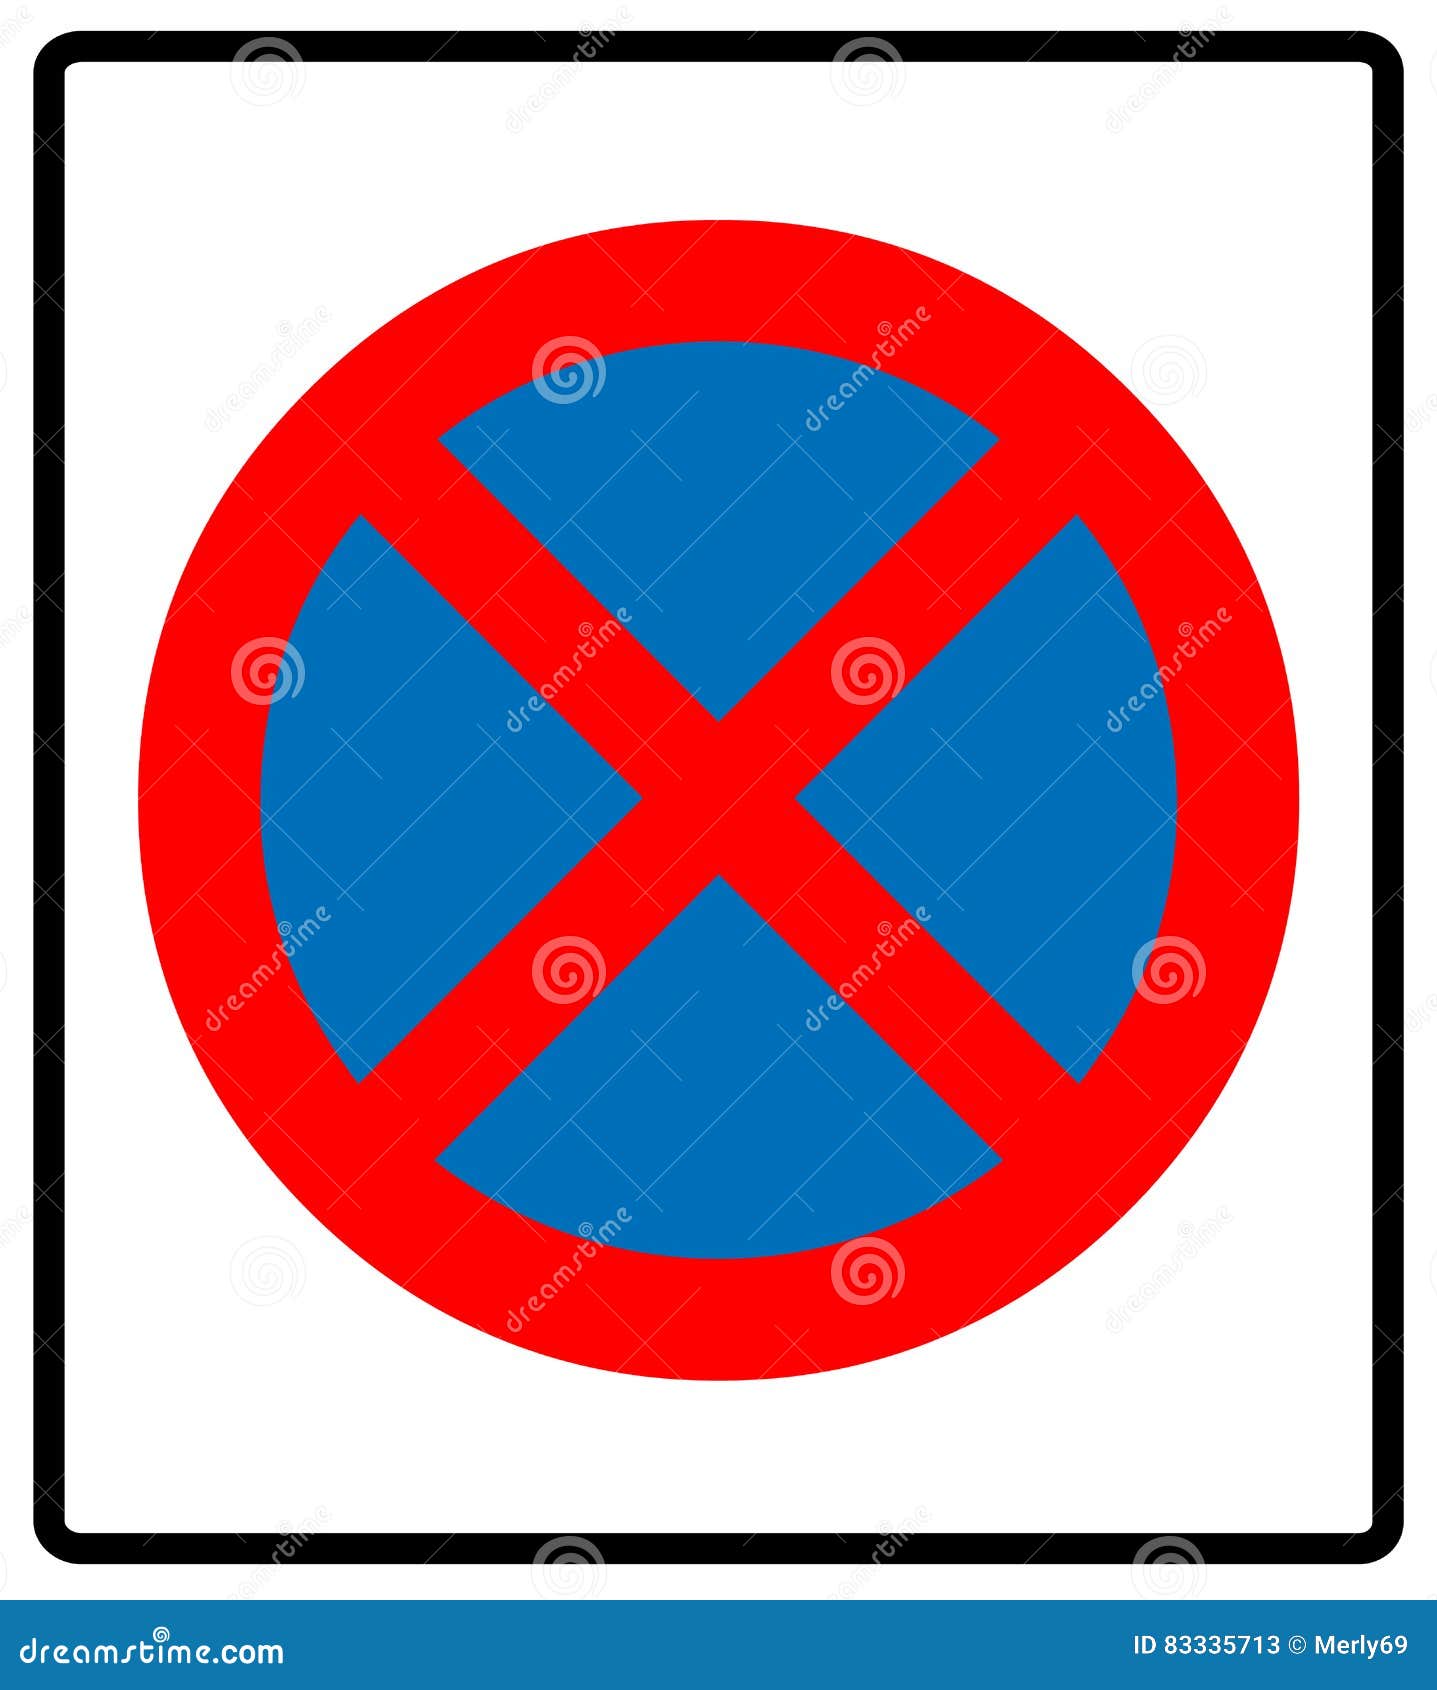 Biển cấm đỗ xe - Đây là một biểu tượng dễ nhận diện với chữ C đỏ trên nền trắng. Hãy xem ảnh liên quan và hiểu rõ quy tắc vi phạm khi đỗ xe tại những nơi này. Tránh vi phạm để giúp bảo vệ an toàn giao thông.